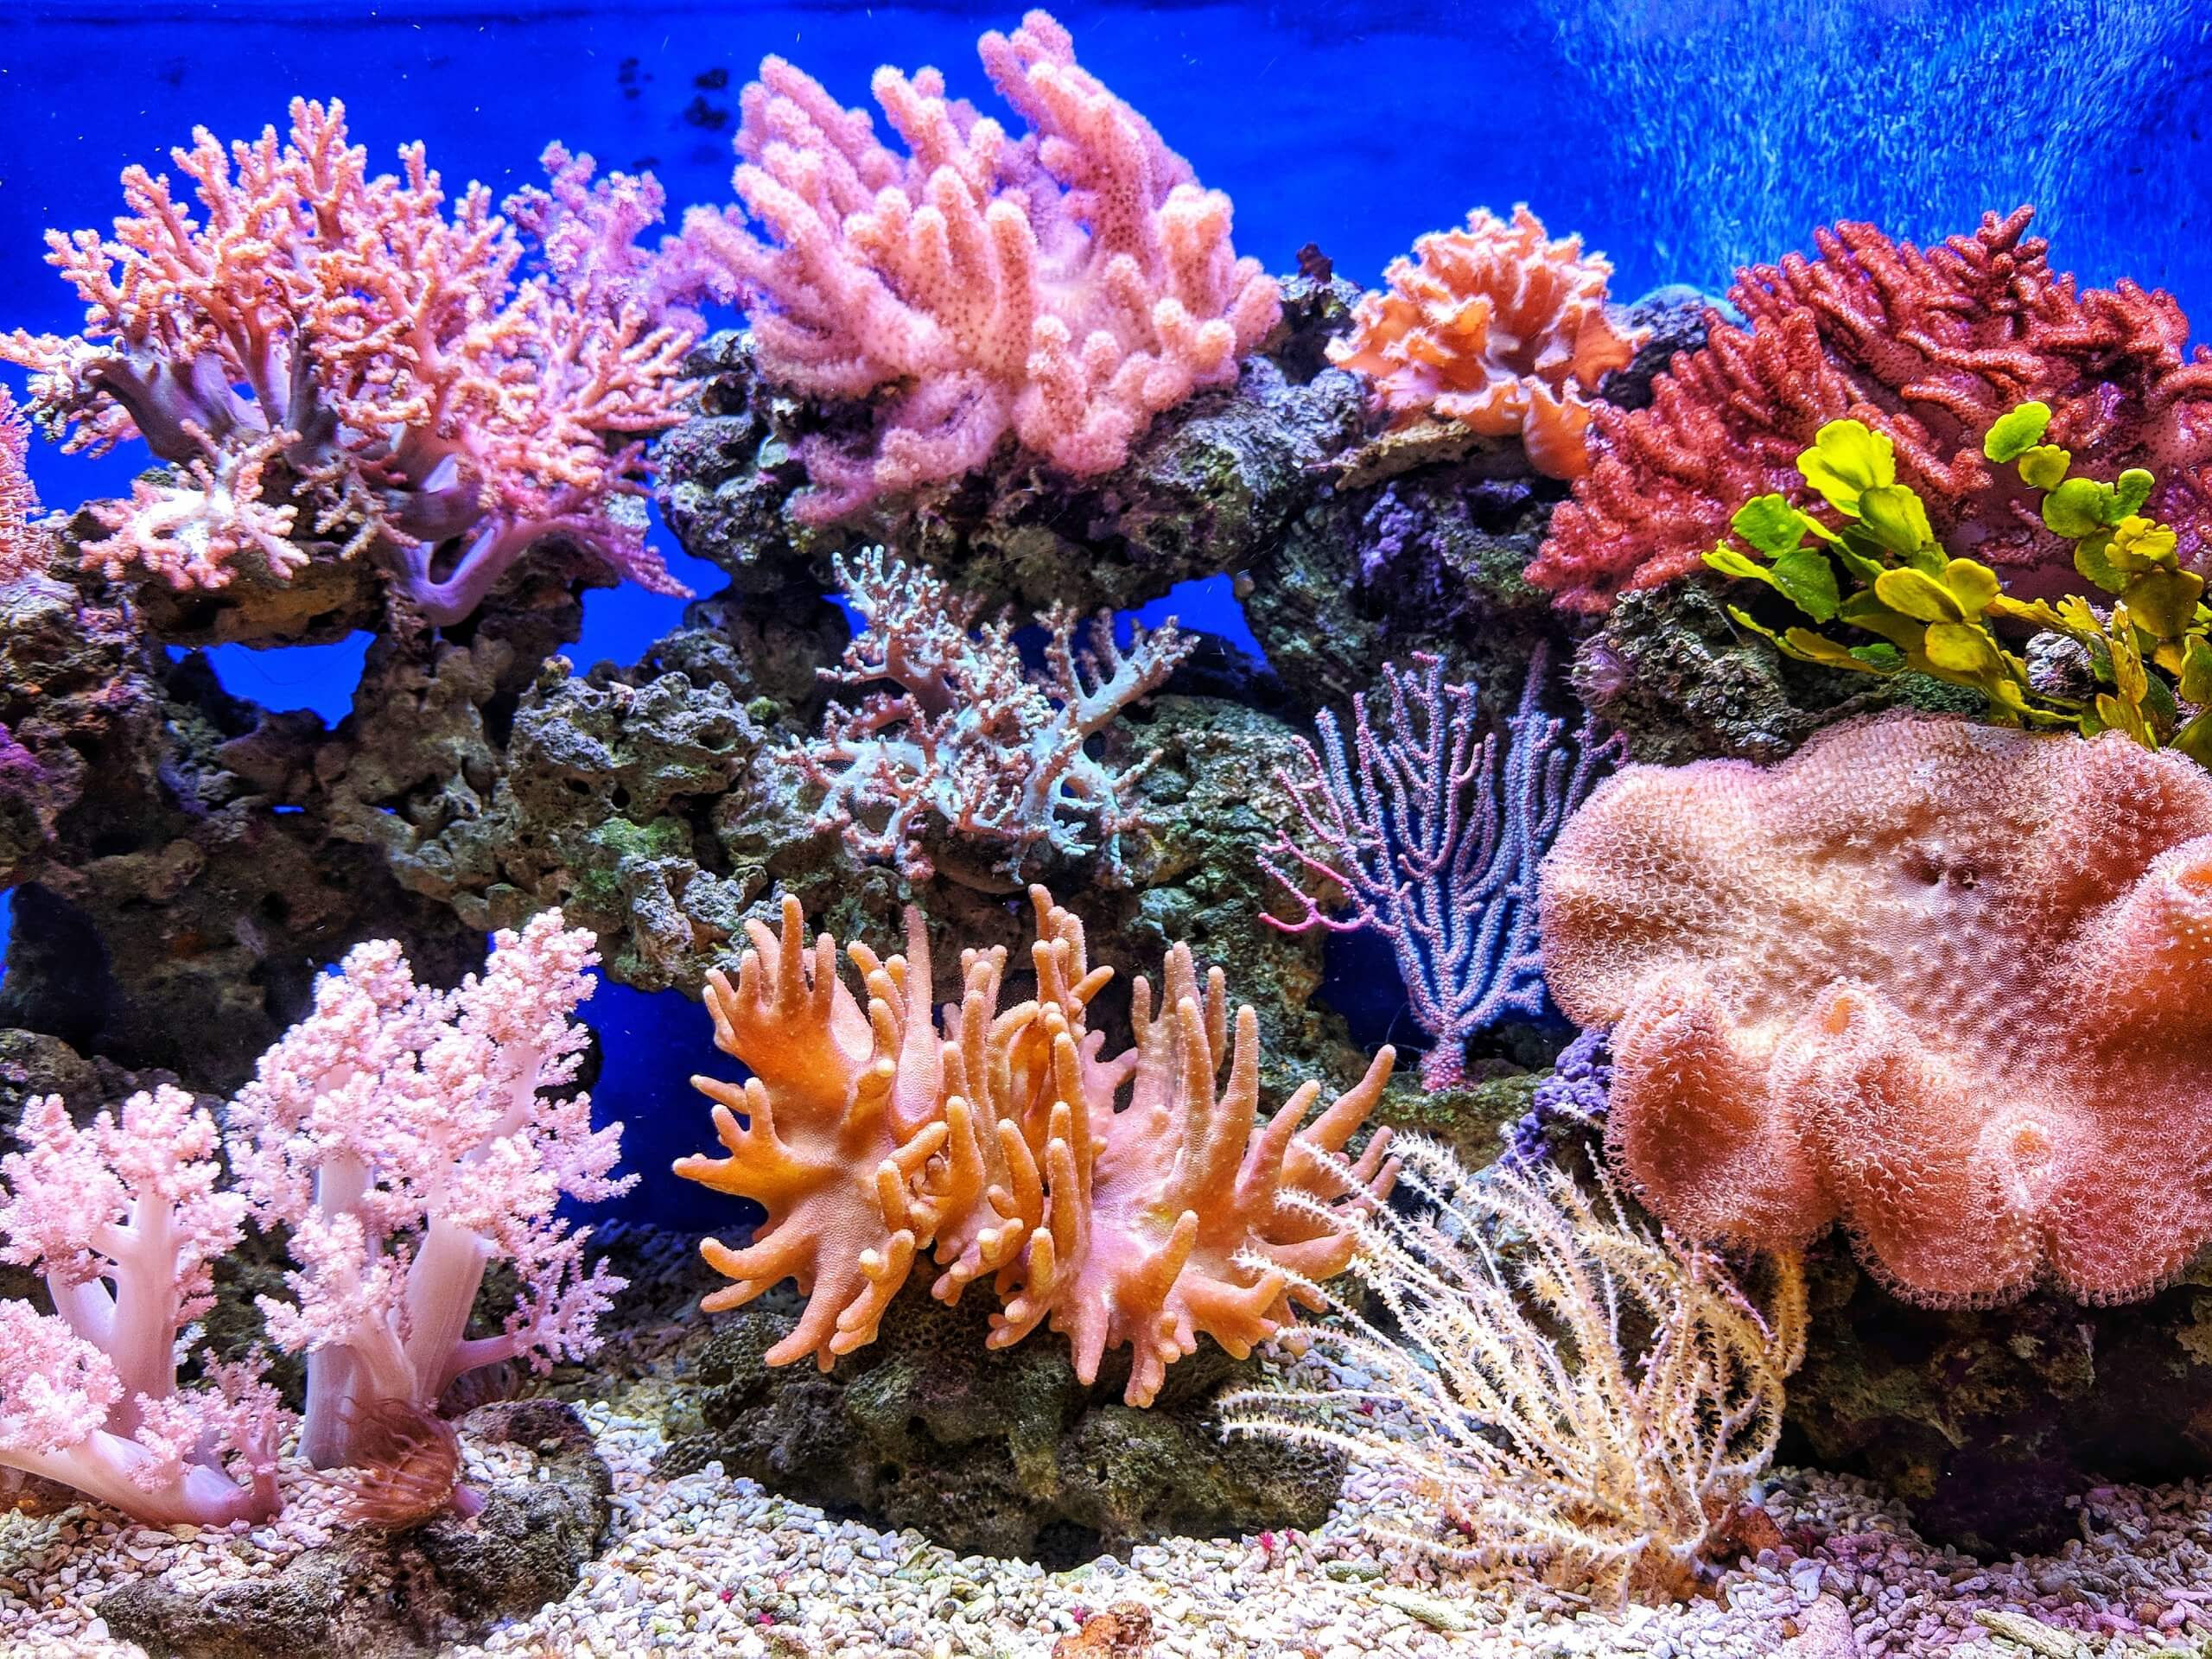 التهديد الأكثر أهمية للحاجز المرجاني العظيم هو ارتفاع درجة حرارة مياه المحيطات، مما يؤدي إلى تبييض المرجان. الصورة بواسطة QUI NGUYEN على Unsplash